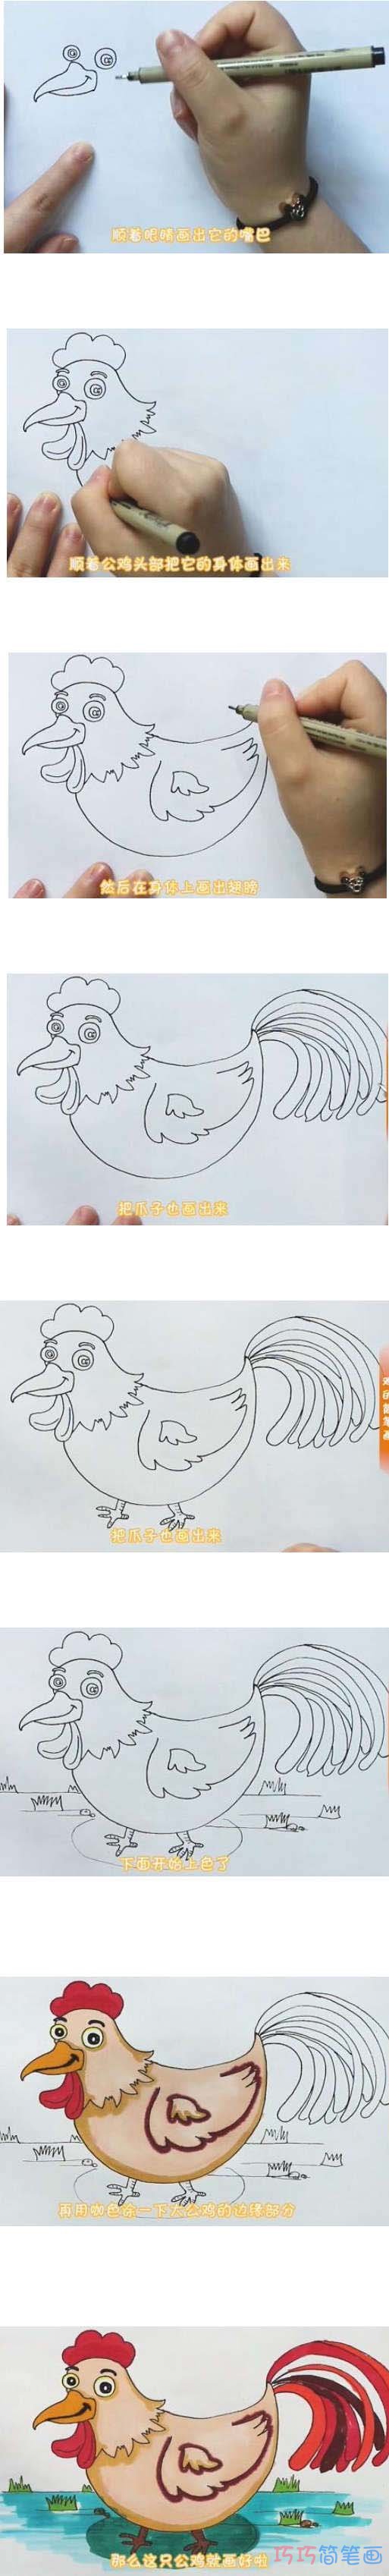 教你一步一步绘画公鸡简笔画涂色简单漂亮